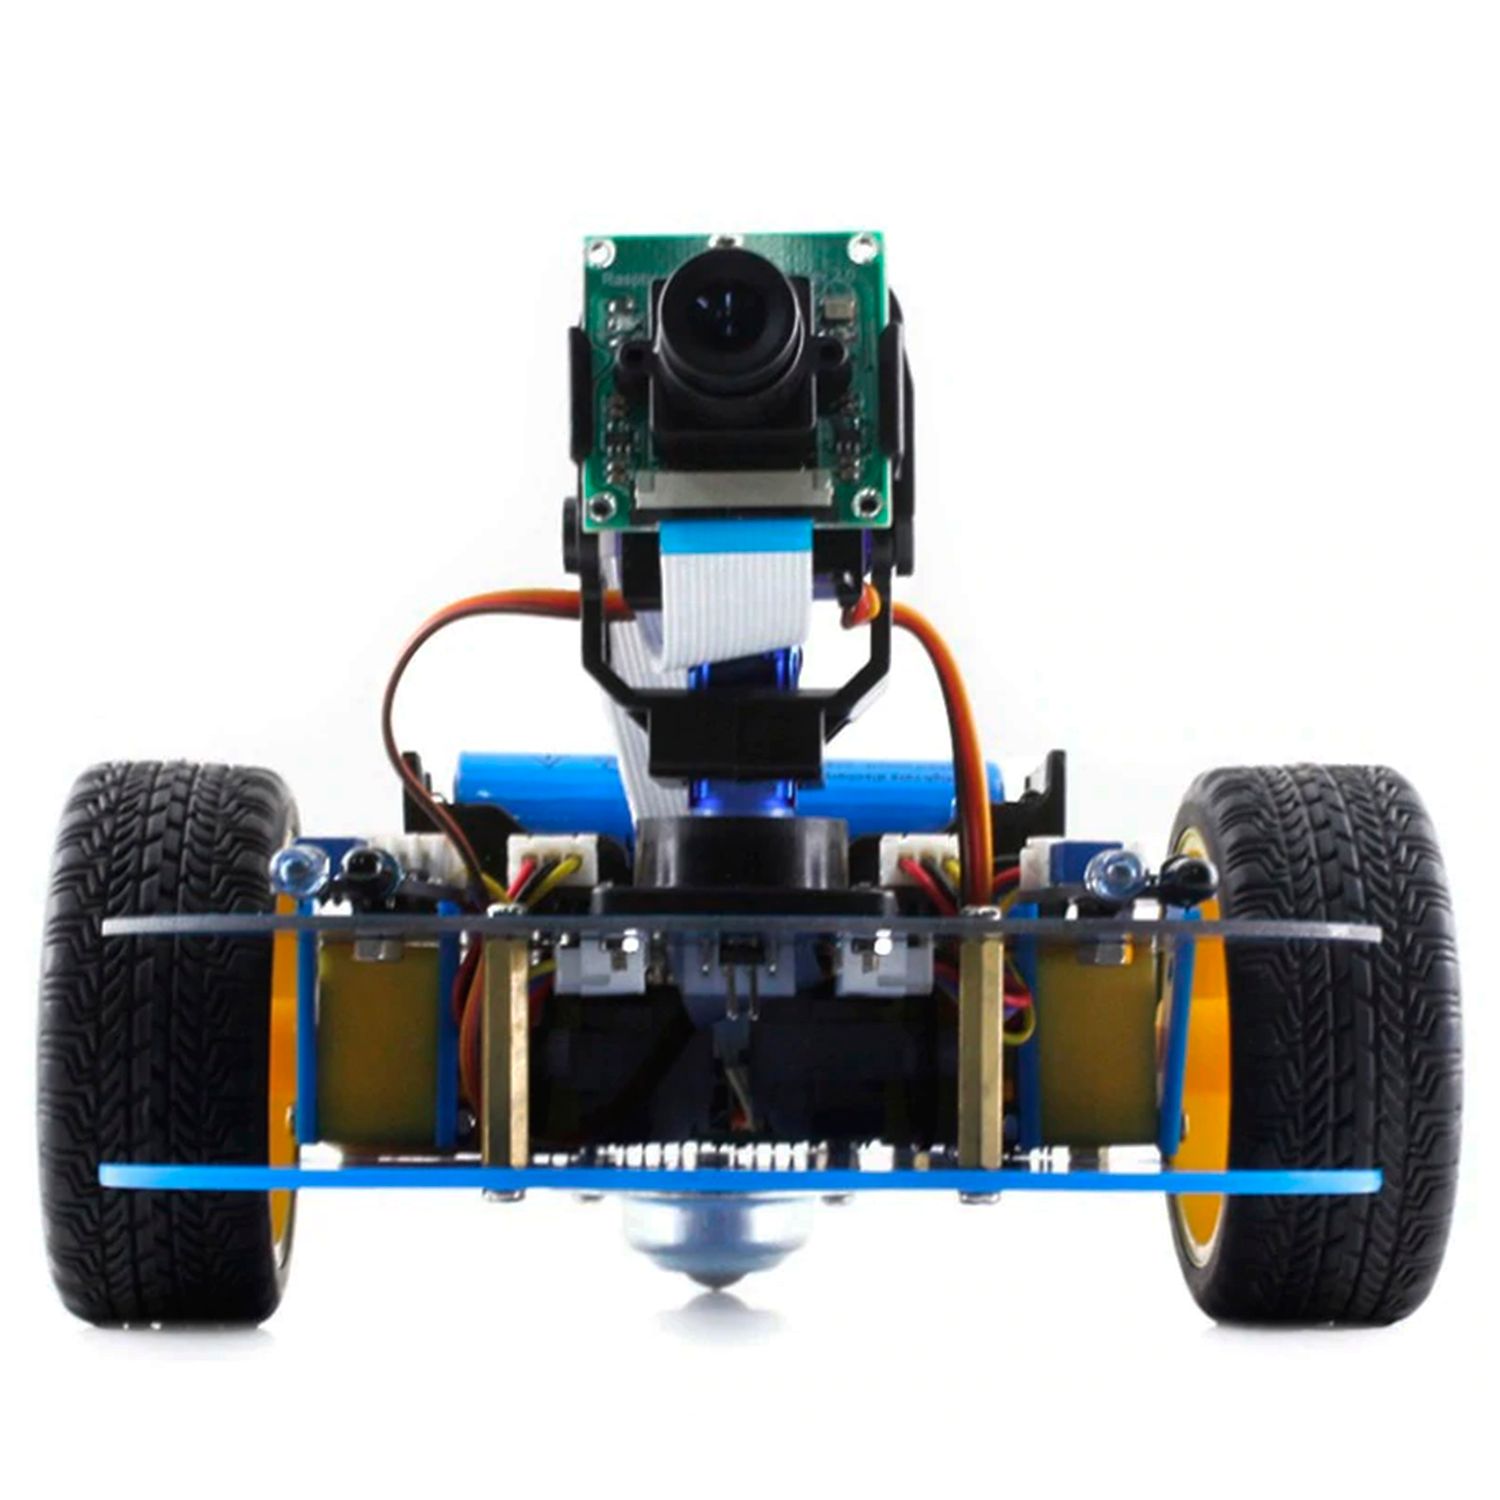 Набір для збірки робота - автомобіля AlphaBot на Raspberry Pi